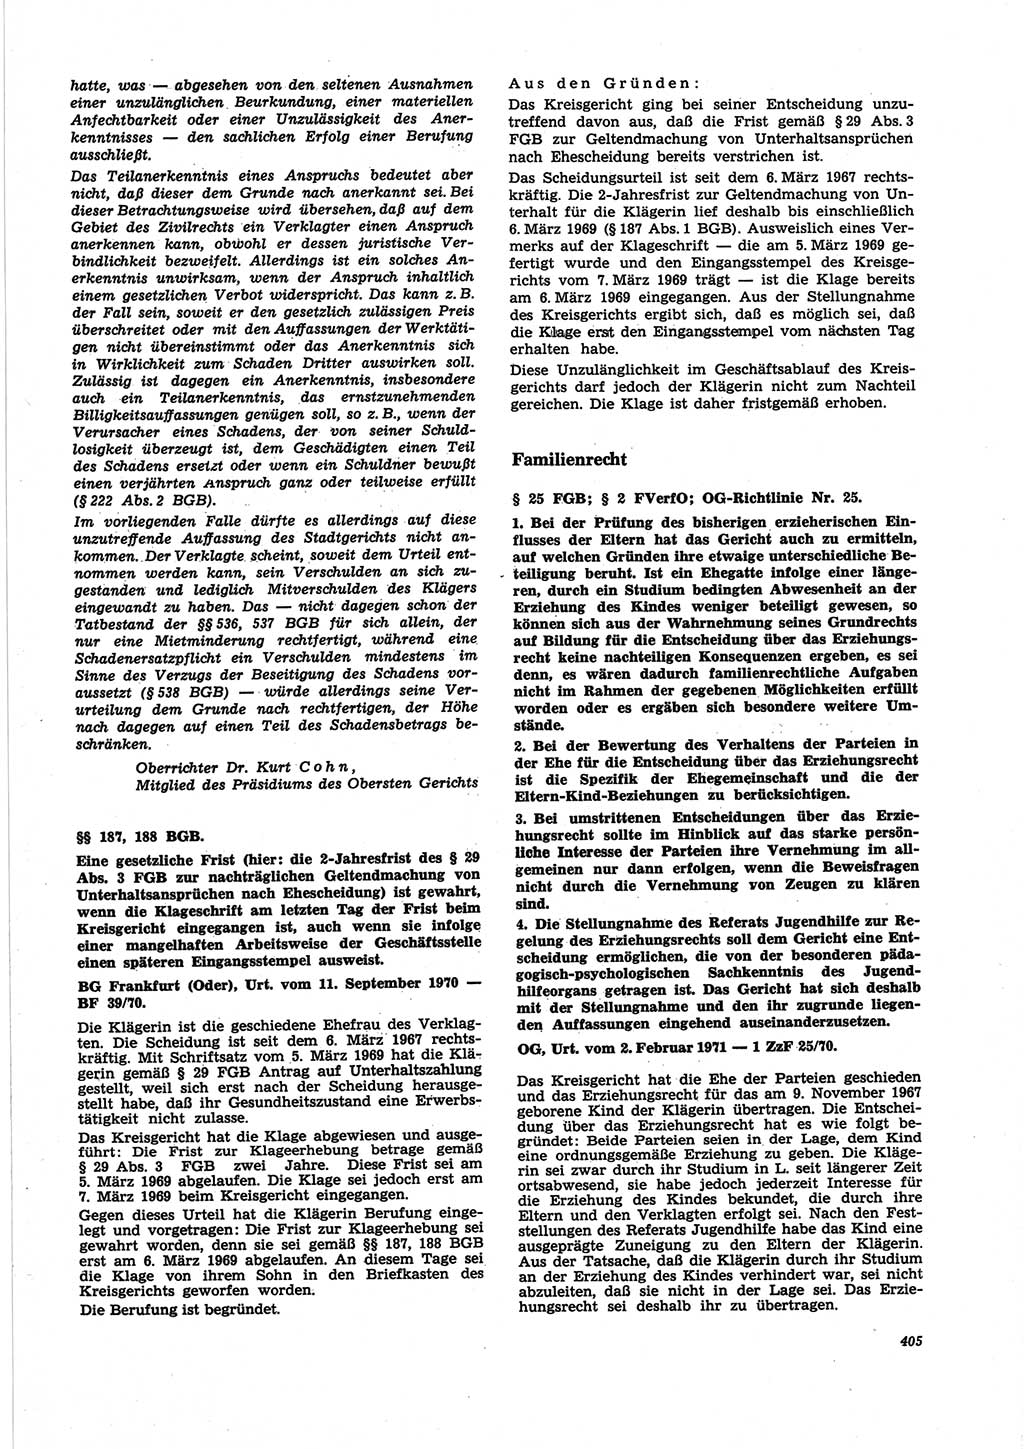 Neue Justiz (NJ), Zeitschrift für Recht und Rechtswissenschaft [Deutsche Demokratische Republik (DDR)], 25. Jahrgang 1971, Seite 405 (NJ DDR 1971, S. 405)